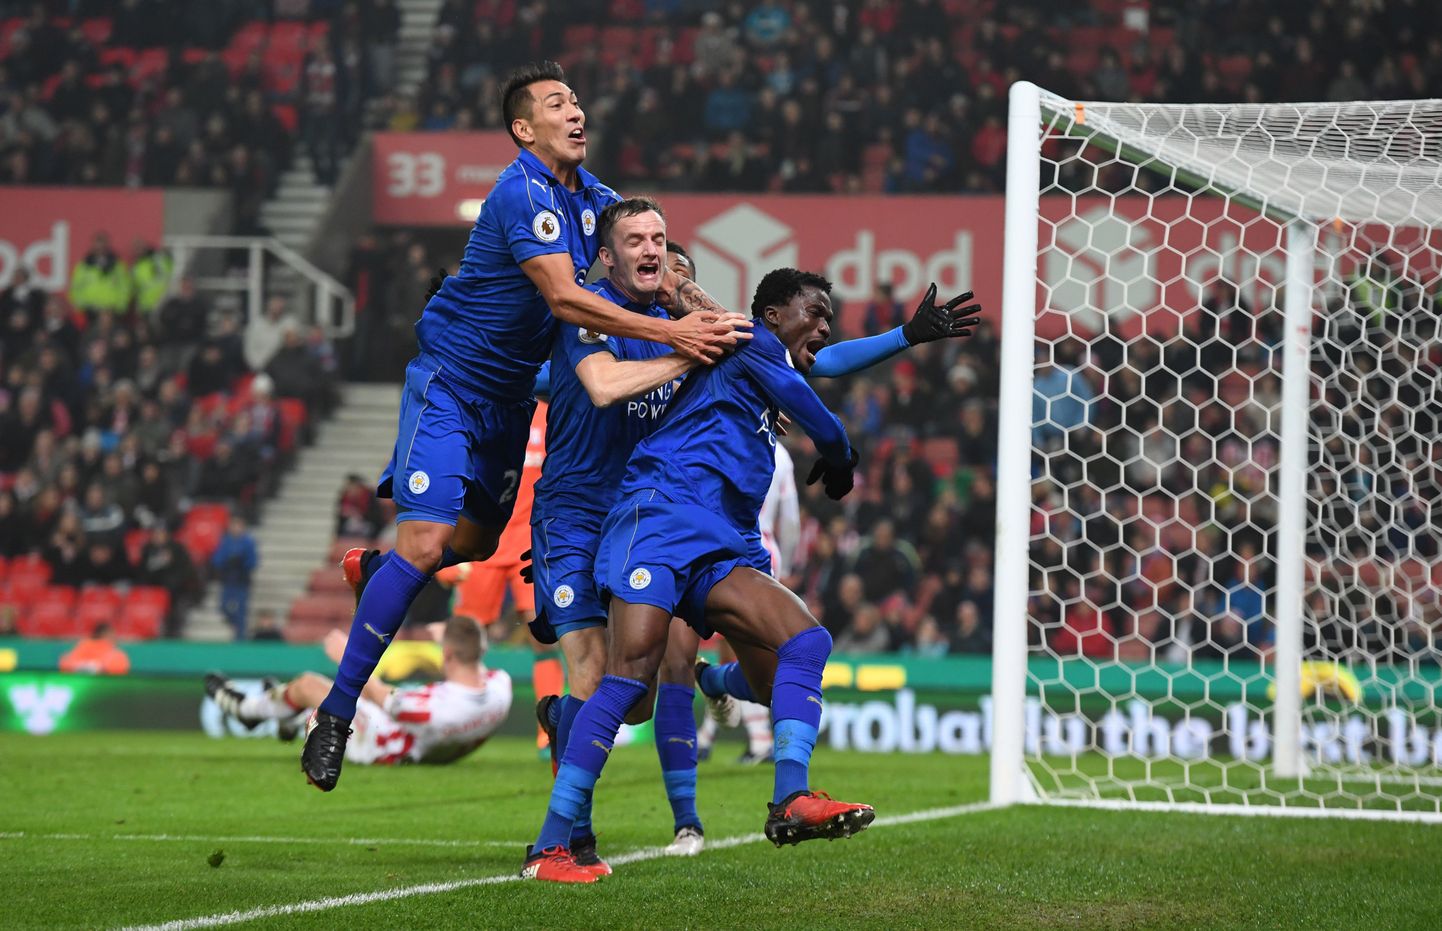 Leicester City mängijad väravat tähistamas.